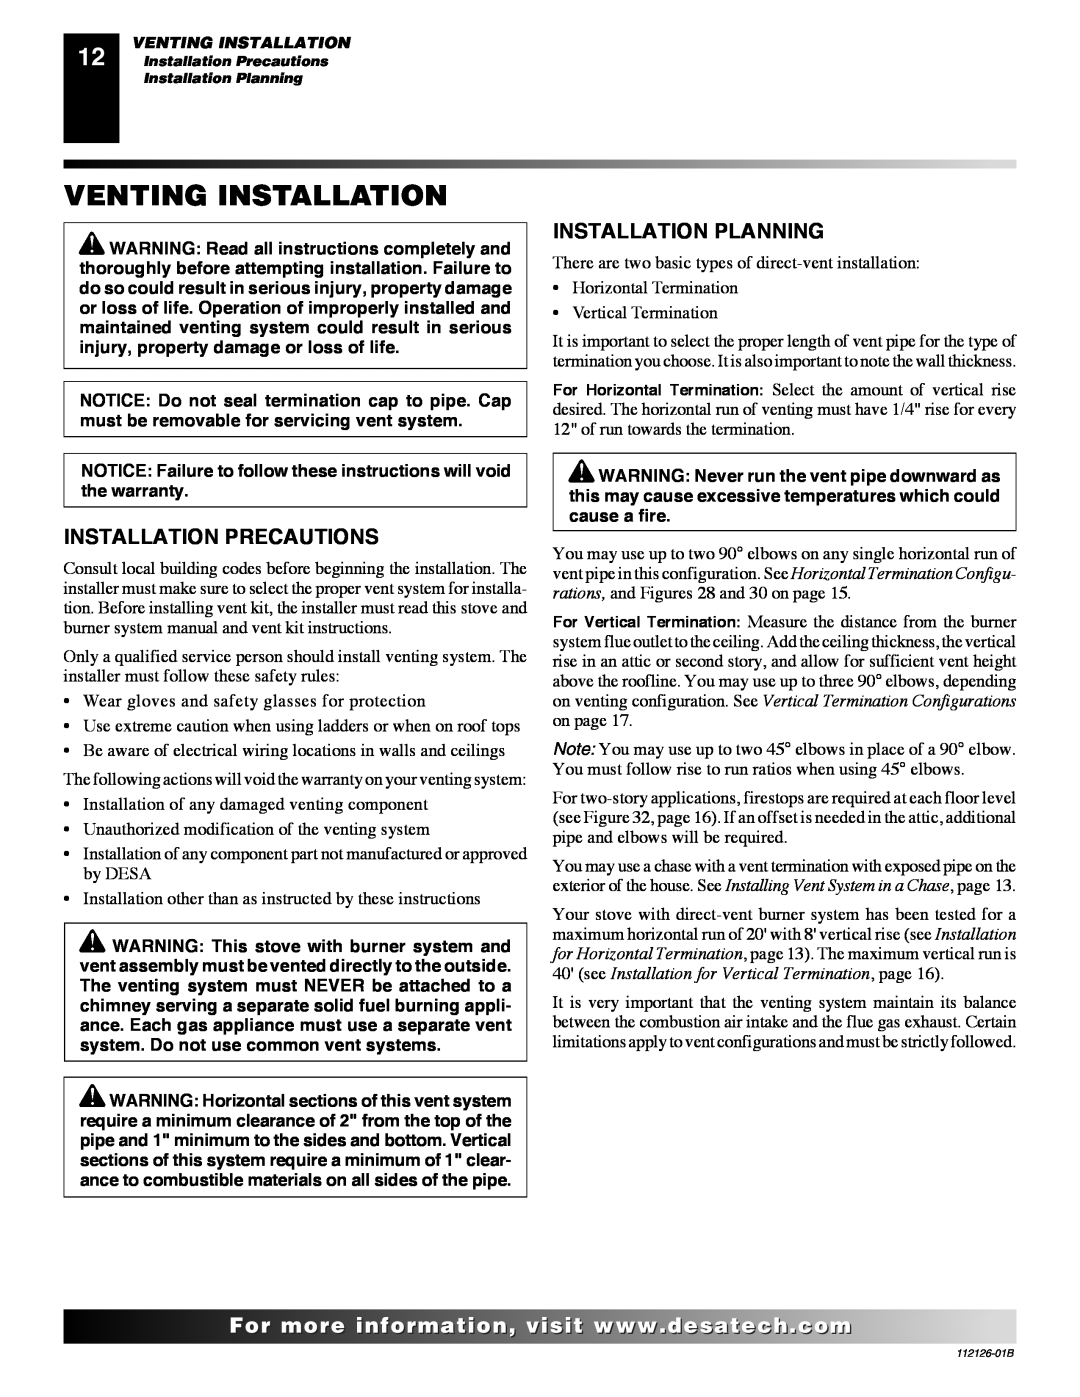 Desa SDVBND, SDVBPD installation manual Venting Installation, Installation Precautions, Installation Planning 